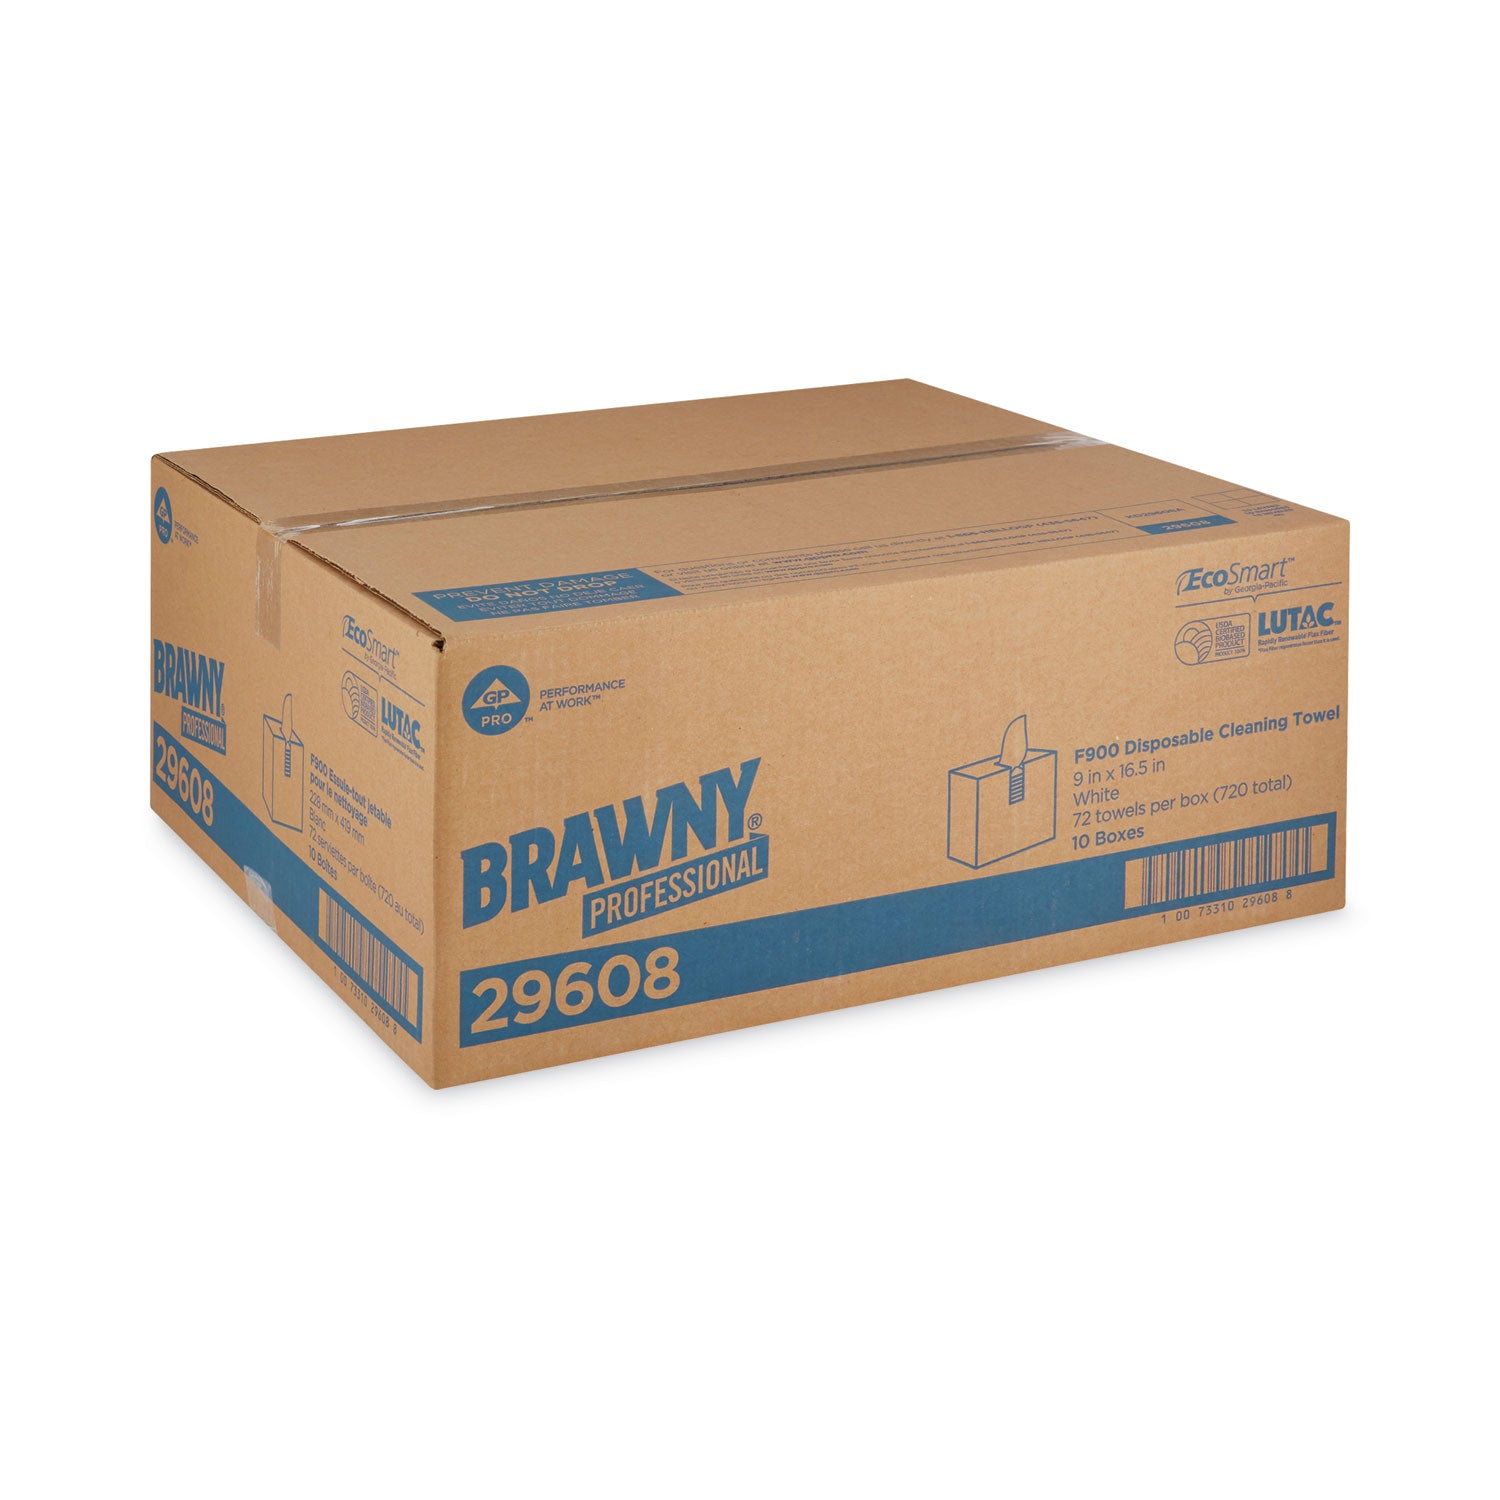 FLAX 900 Heavy Duty Cloths, 9 x 16.5, White, 72/Box, 10 Box/Carton - 